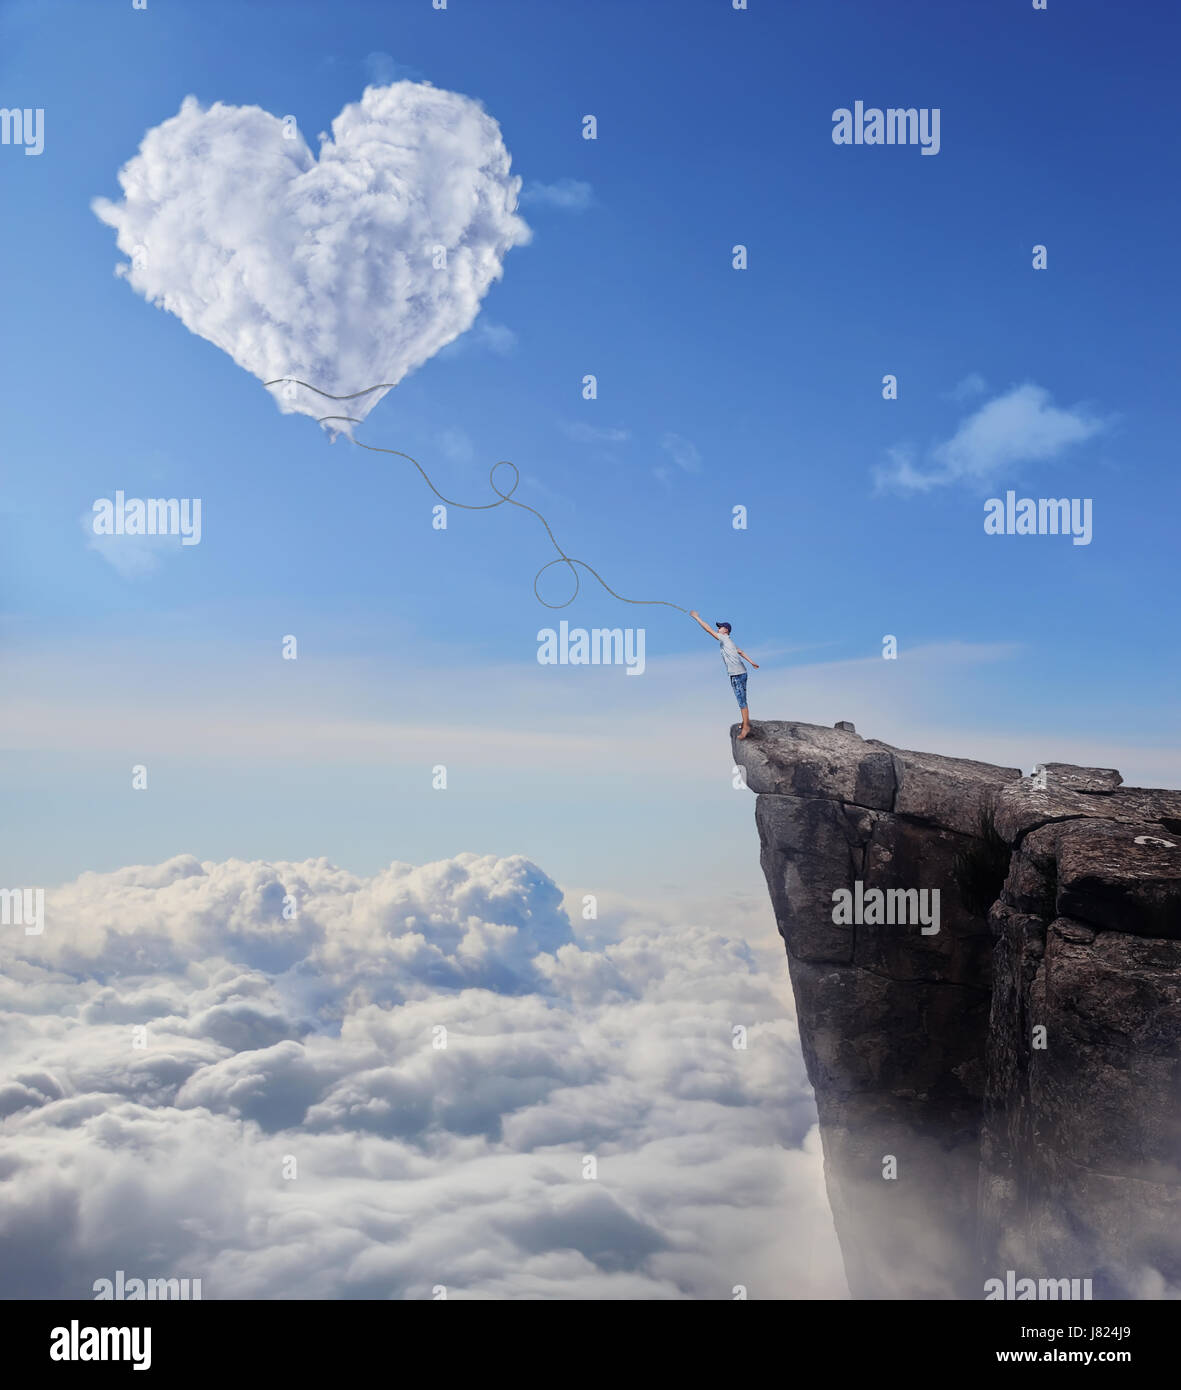 Imaginäre Sicht mit einem jungen am Rande einer Klippe, versucht, ein Herz zu fangen geformt Cloud mit einem langen Seil. Folgen Sie Ihrem Herzen-Konzept. Stockfoto